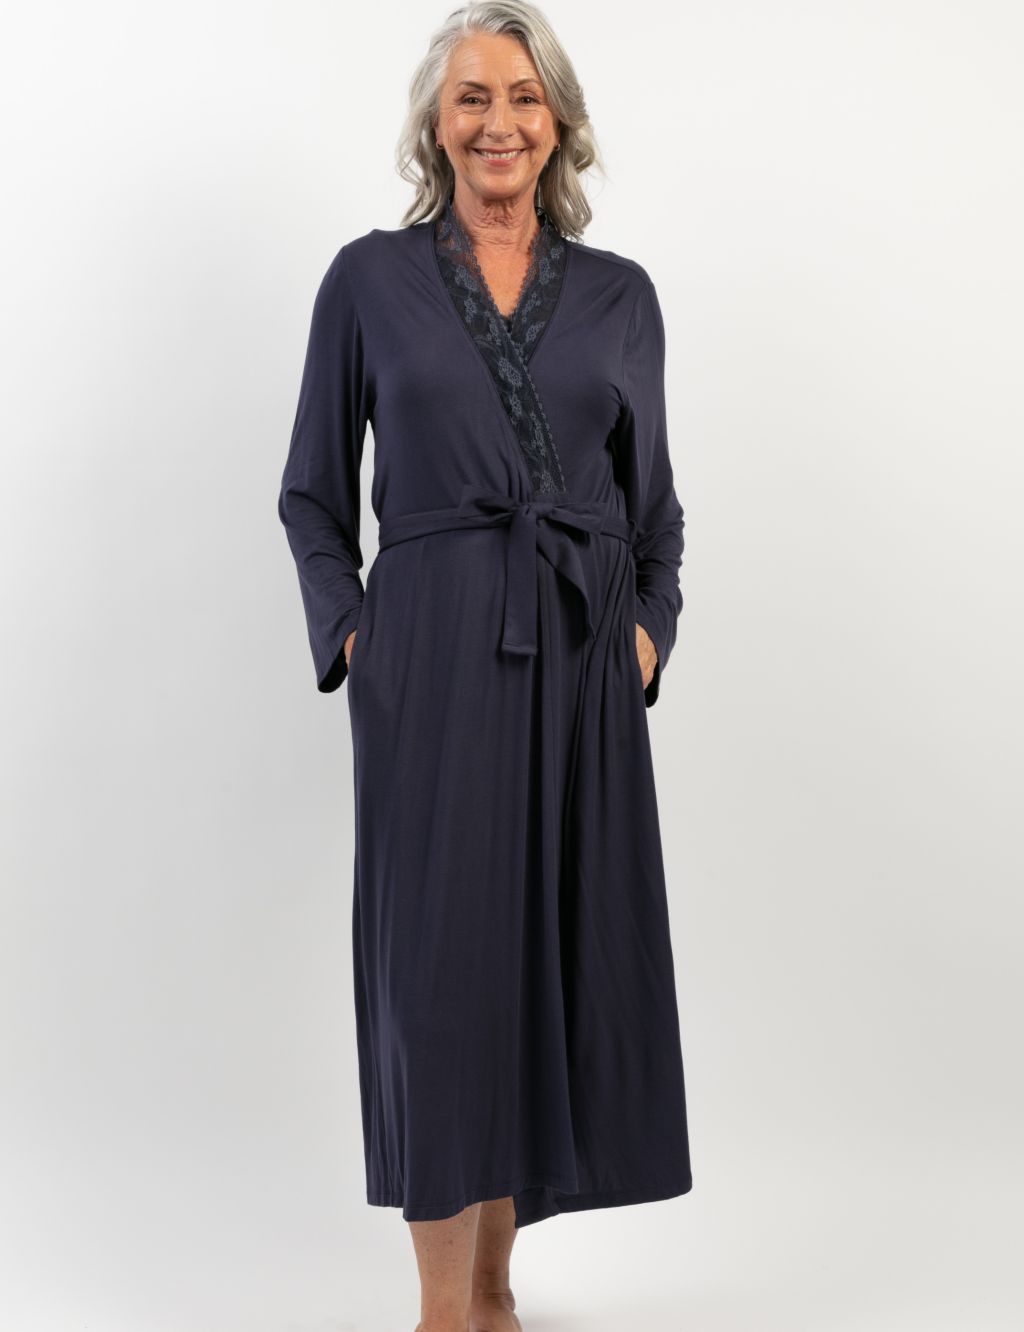 Modal Rich Lace Trim Long Dressing Gown image 1